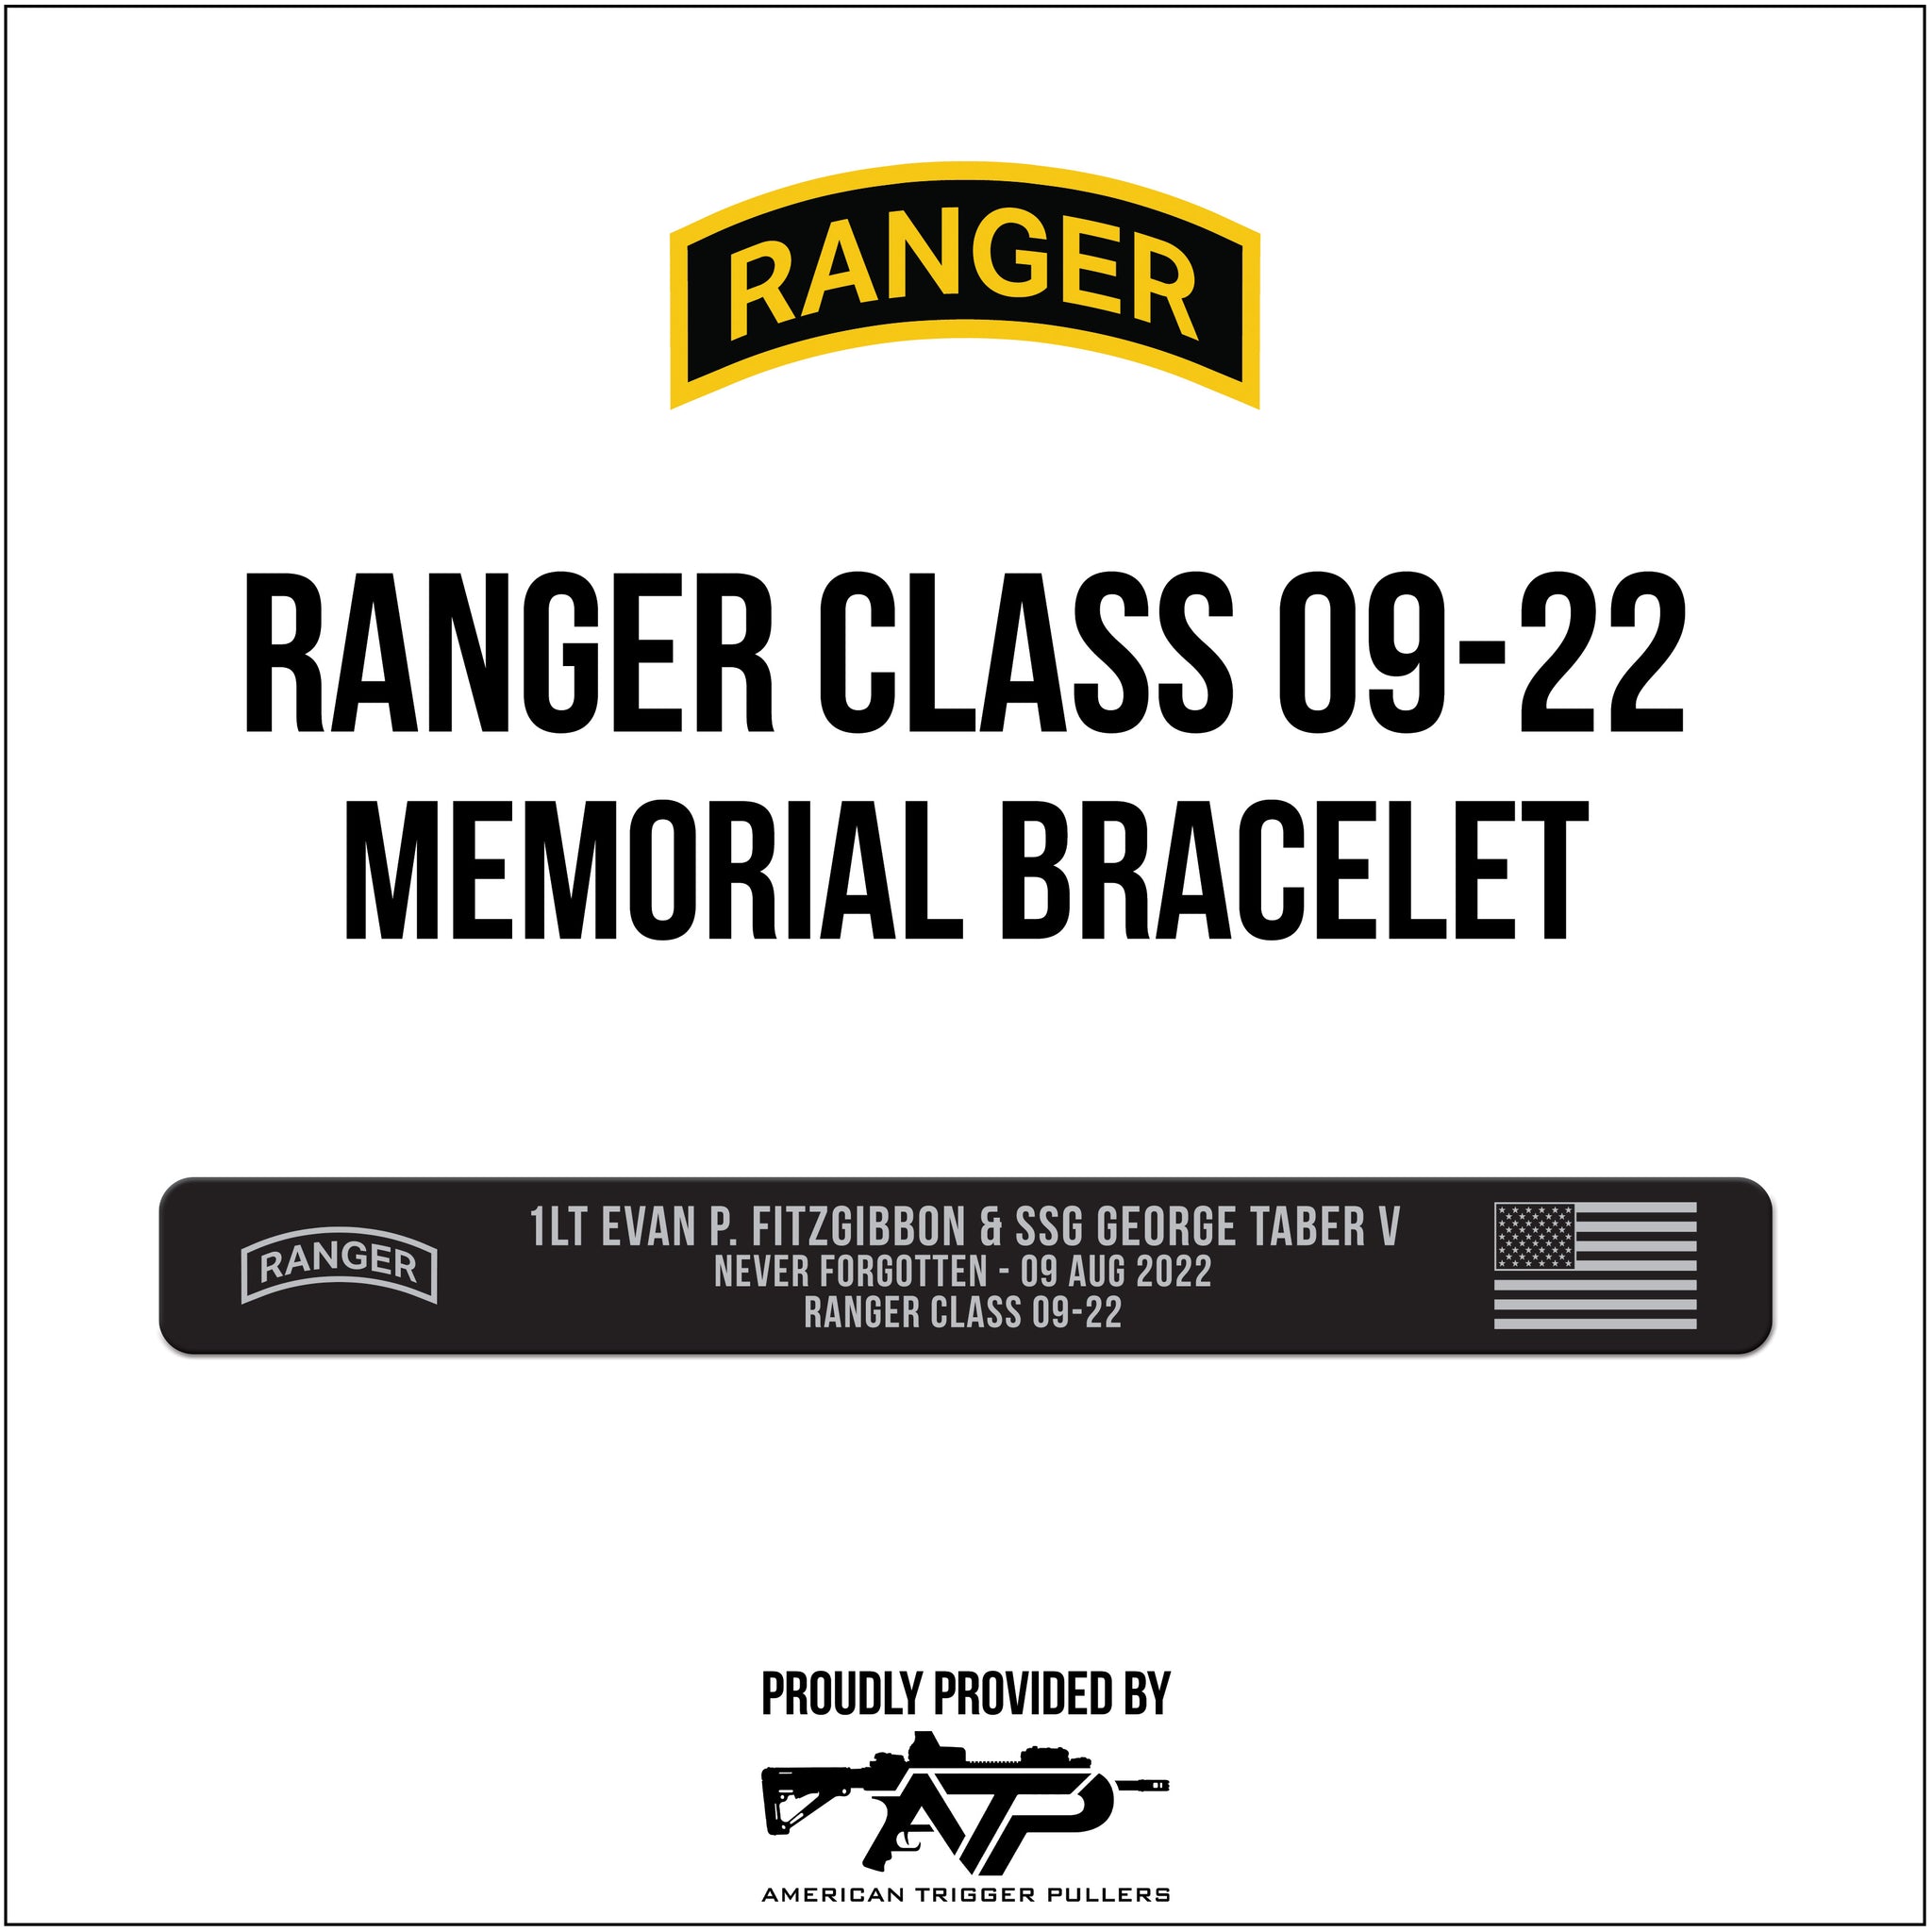 Ranger Class 09-22 Memorial Bracelet